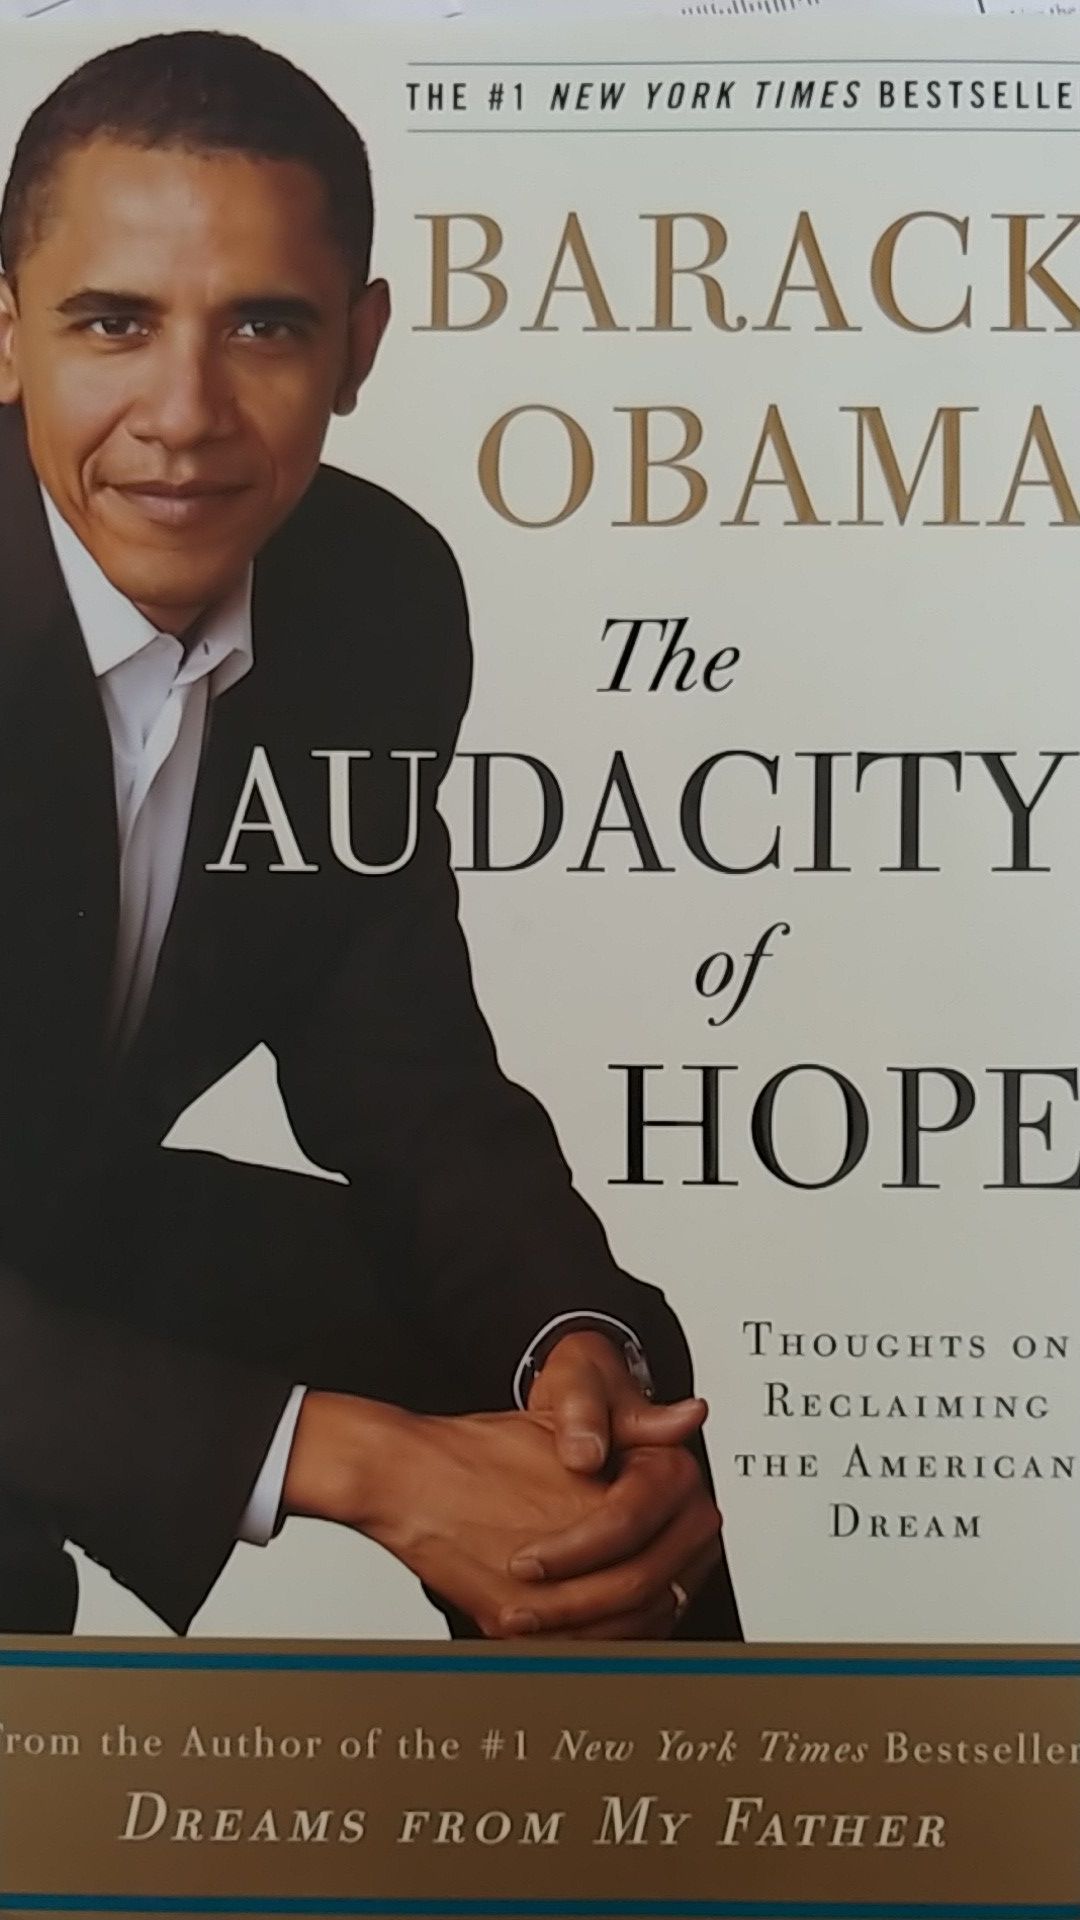 Barack Obama's "The Audacity of Hope" Hard Copy